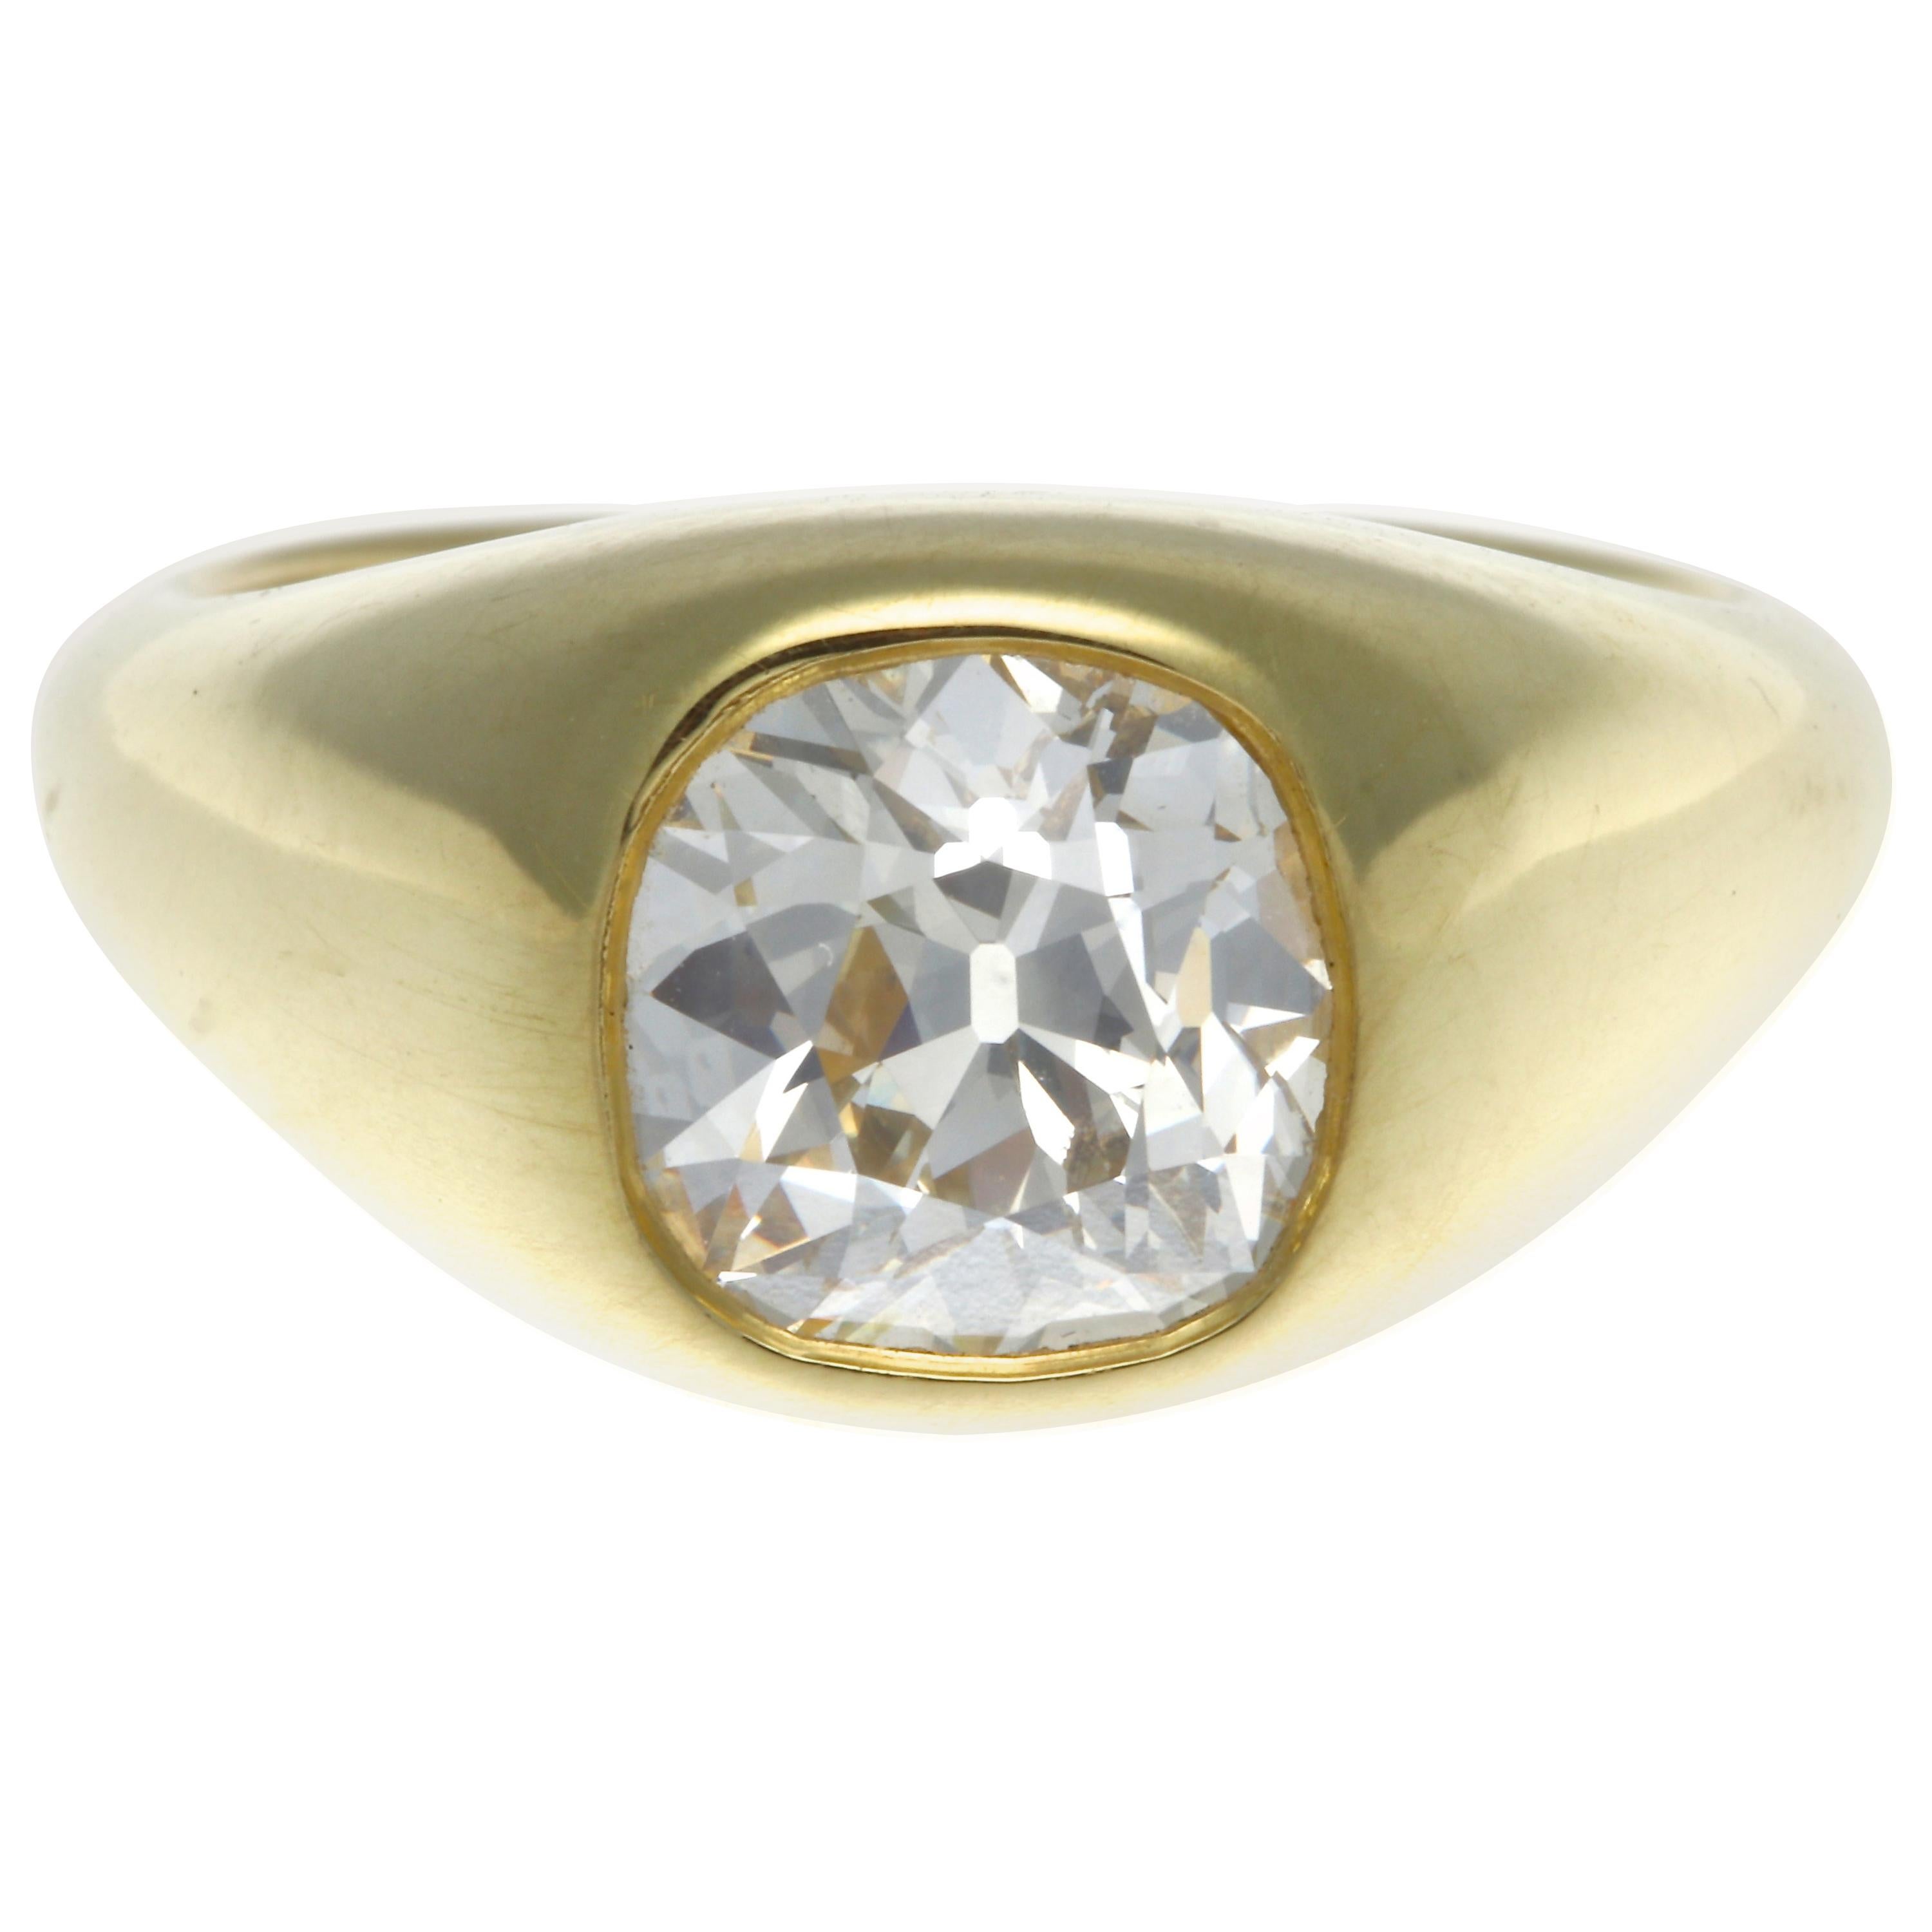 GIA Certified 2.02 Carat Cushion Cut Diamond 18 Karat Gold Ring